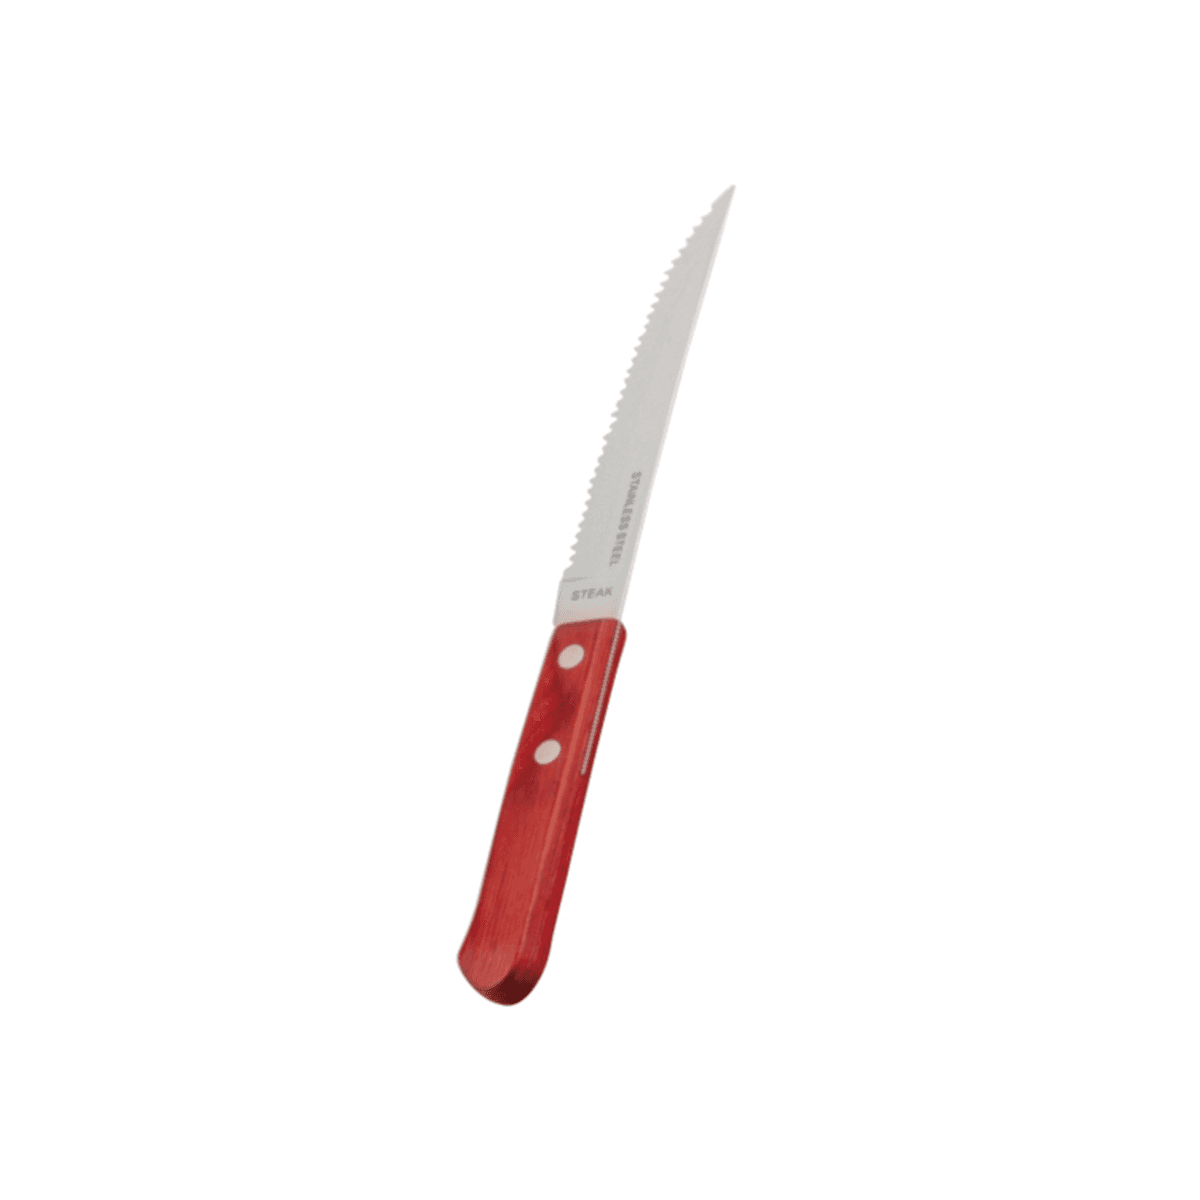 سكين مطبخ لشرائح اللحم ستانلس ستيل 24.5 سم سانيكس Sunnex Stainless Steel Half Tang Steak Knife